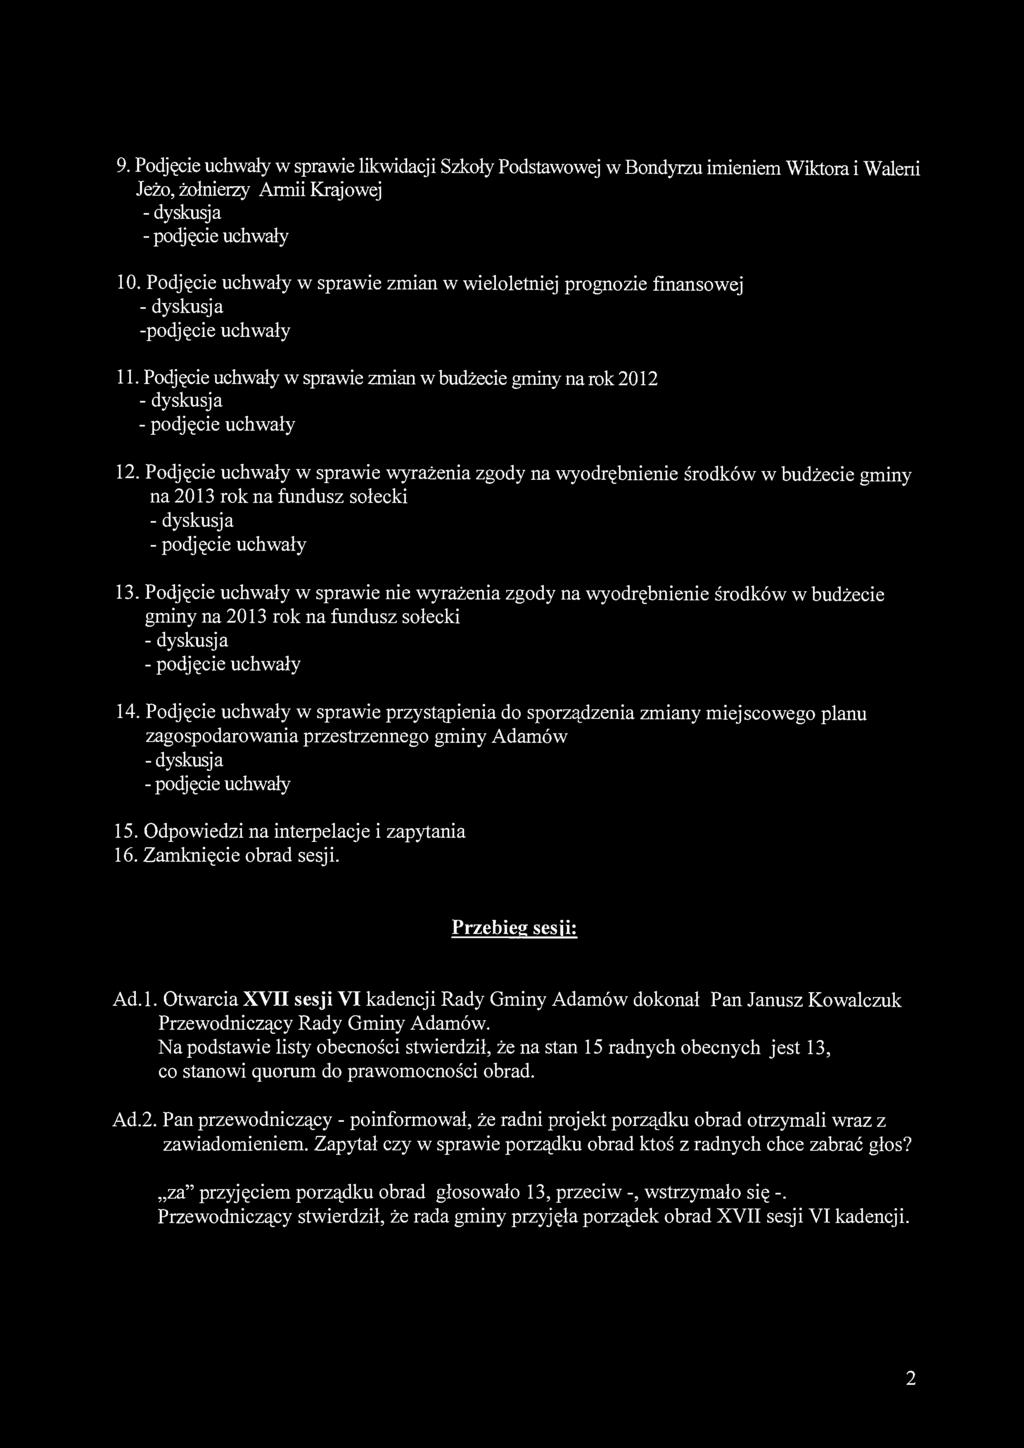 9. Podjęcie uchwały w sprawie likwidacji Szkoły Podstawowej w Bondyrzu imieniem Wiktora i Waleni Jeżo, żołnierzy Armii Krajowej 10.